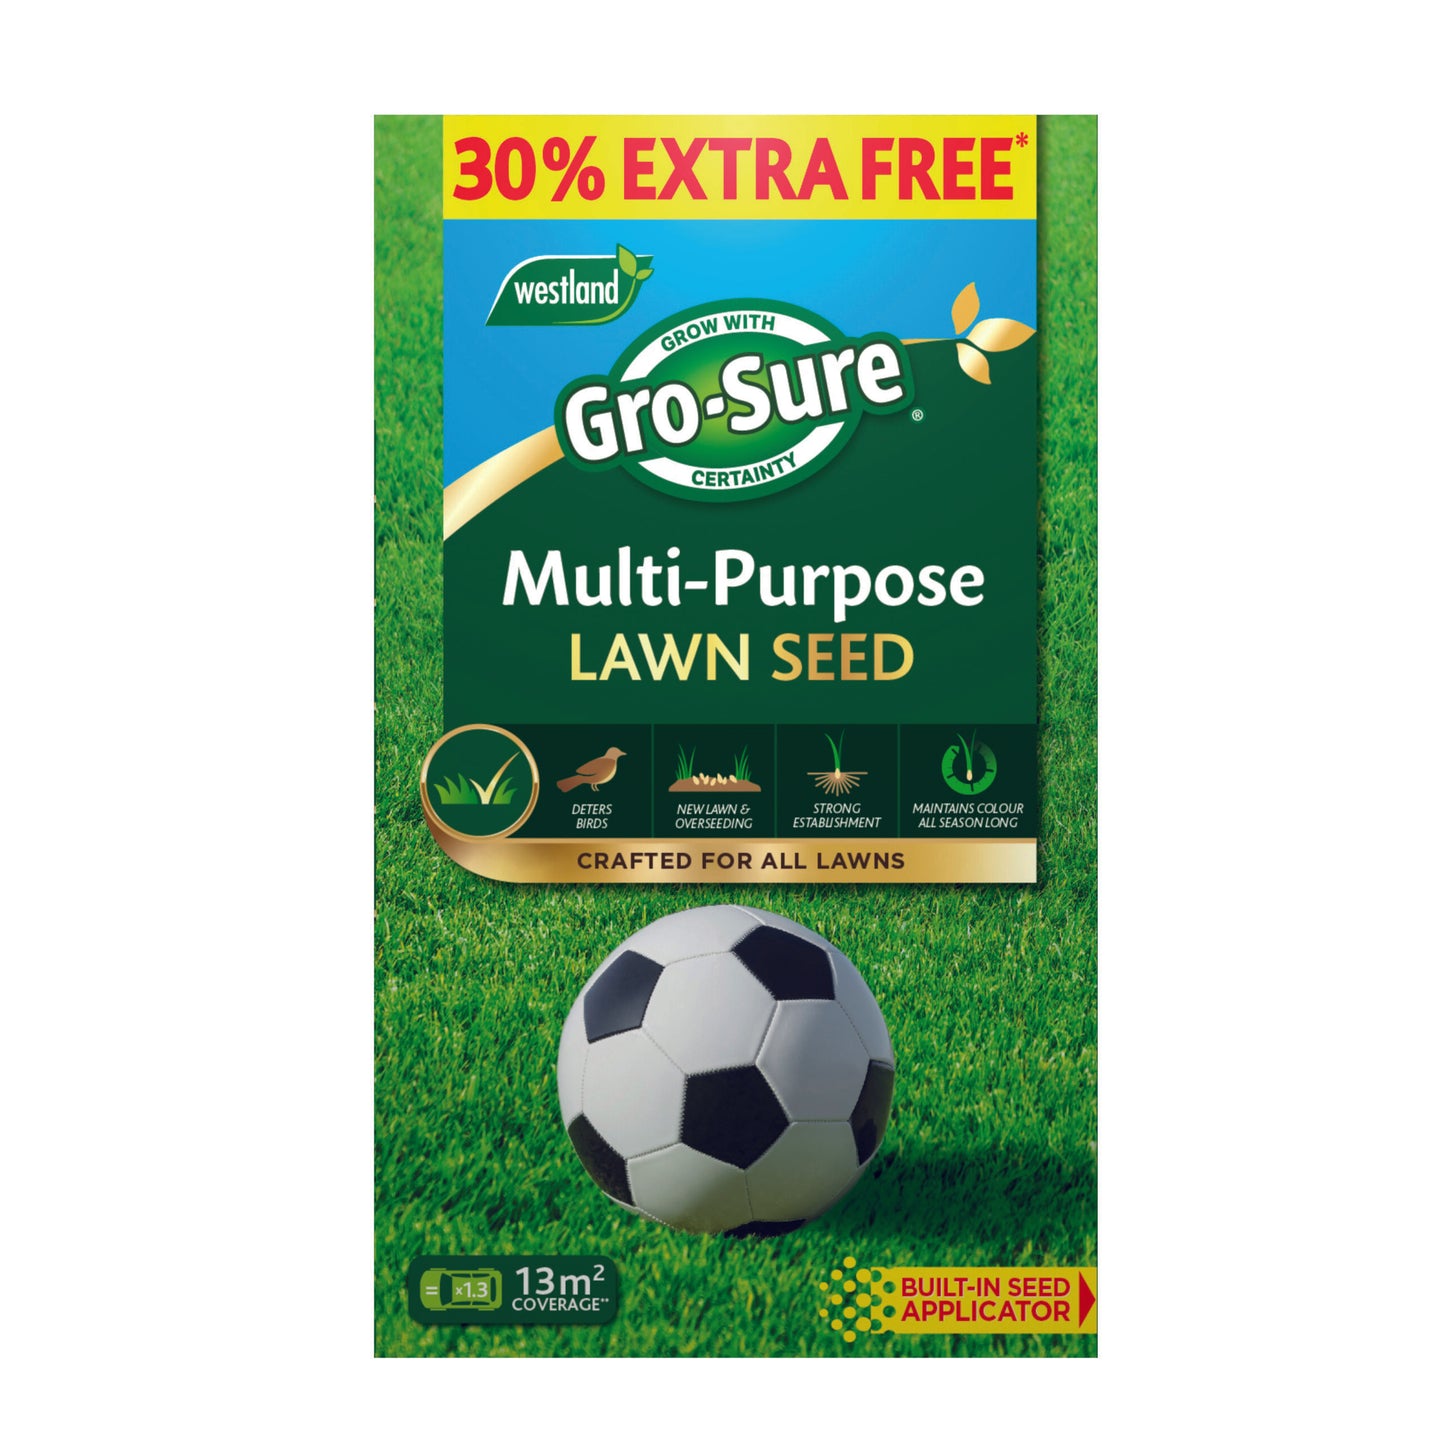 Gro-Sure Multi Purpose Lawn Seed 10msq